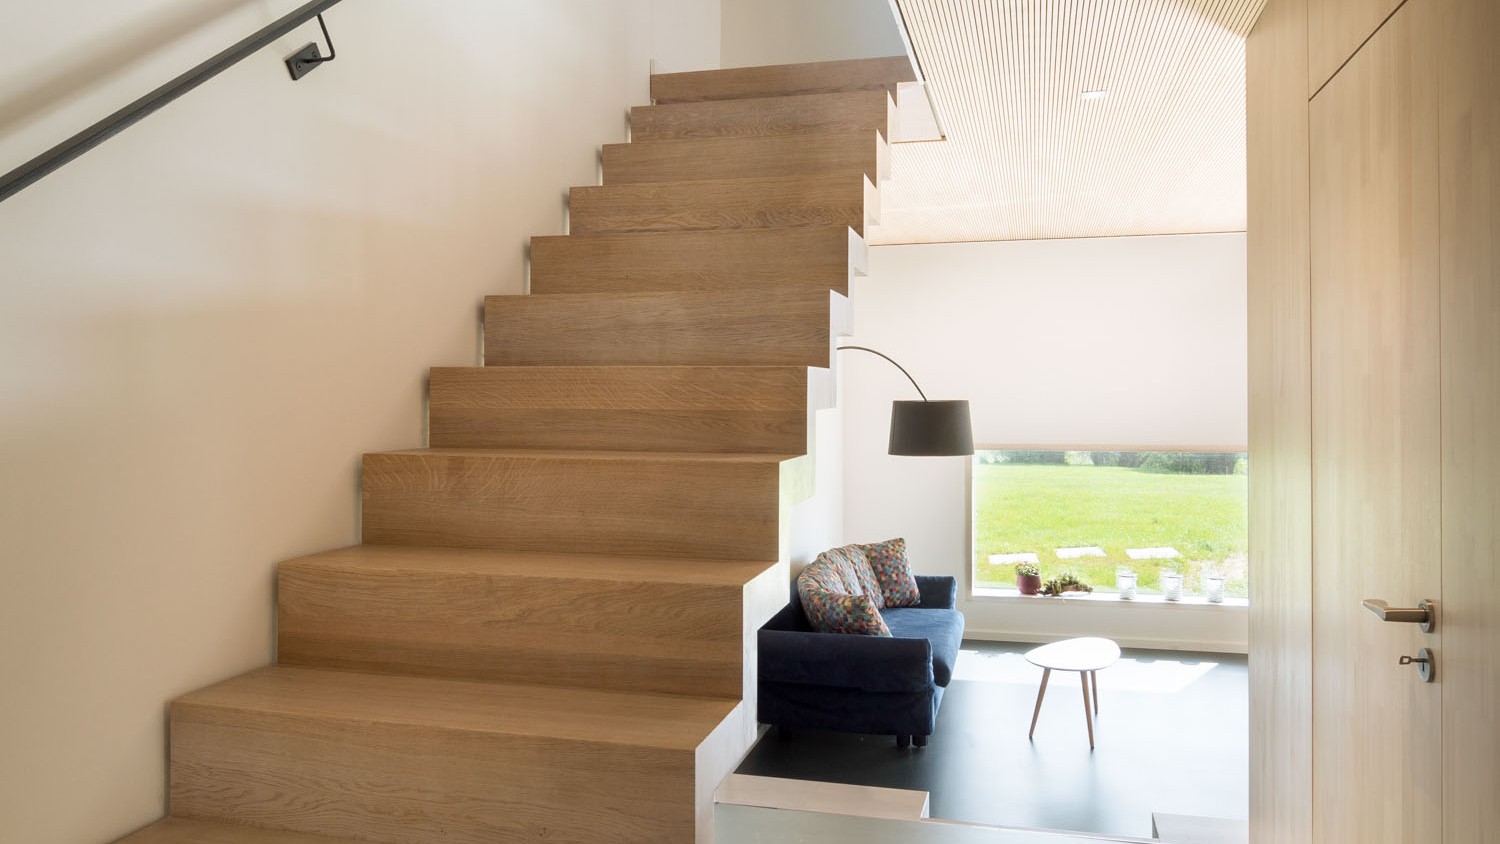 Die offene Holztreppe ins Obergeschoss schließt an die Decke aus fein profilierten Akustikpaneelen an und verleiht dem Raum durch die offene Bauweise einen dynamischen Charakter. 